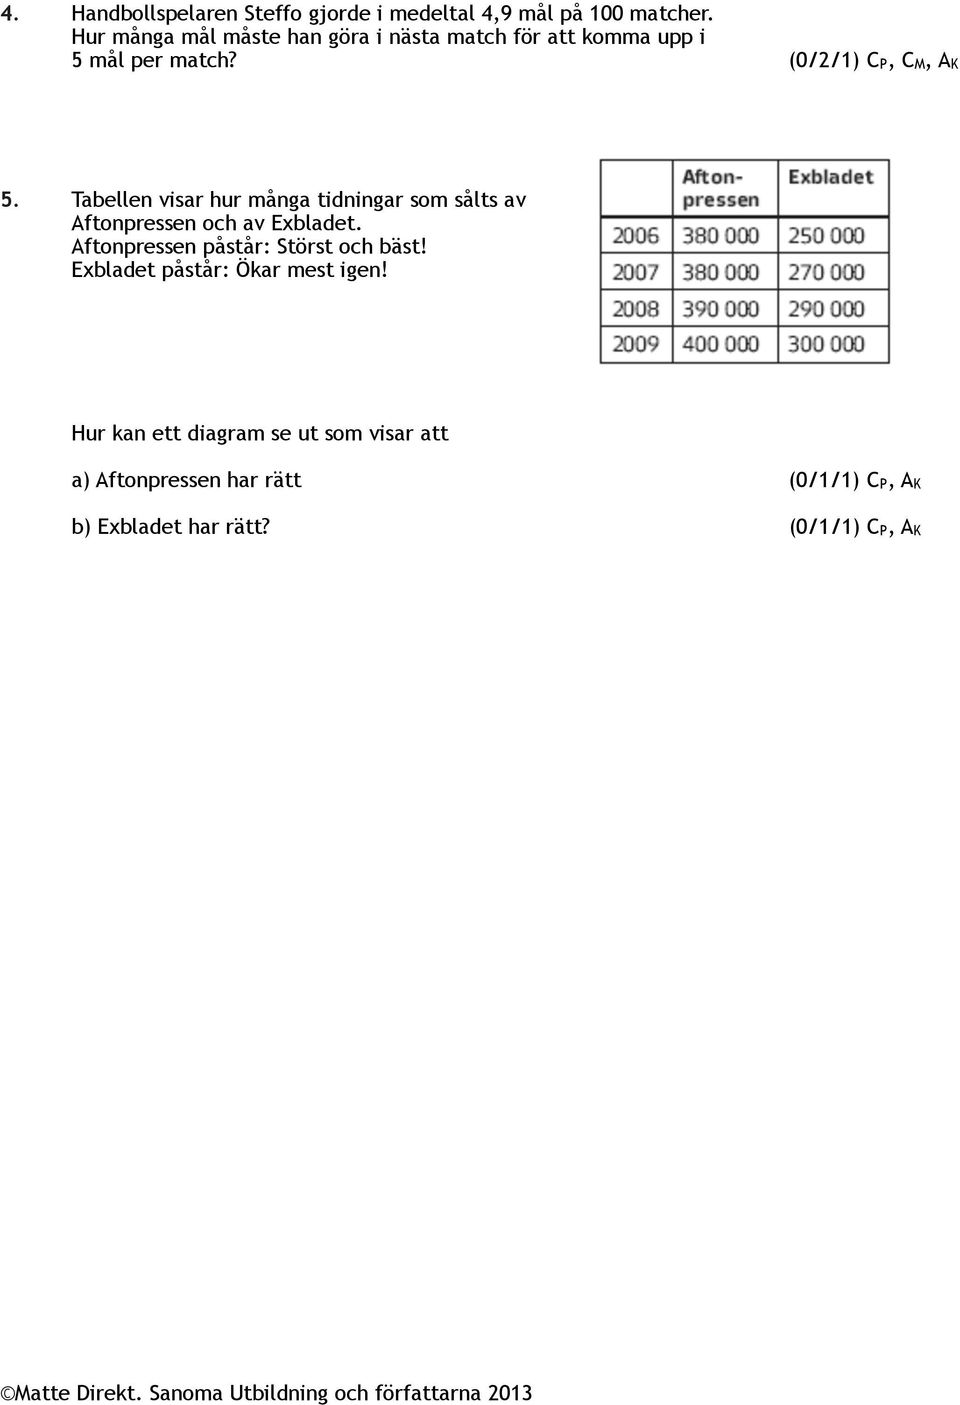 Tabellen visar hur många tidningar som sålts av Aftonpressen och av Exbladet.